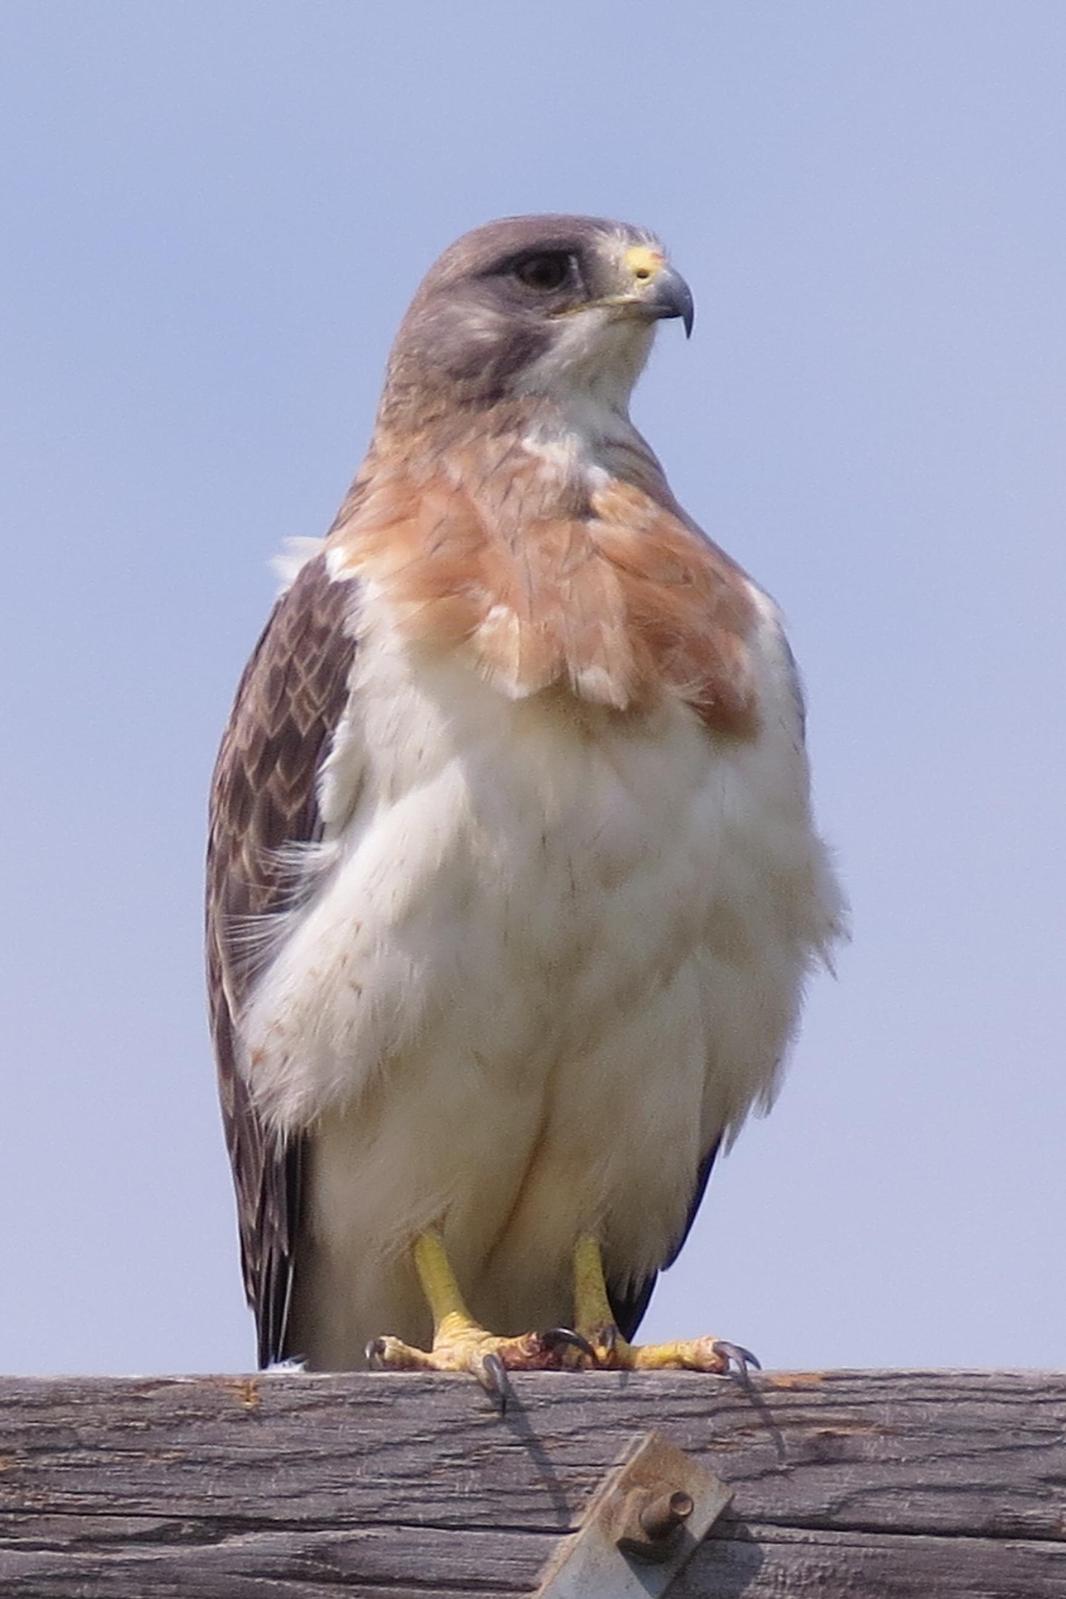 Swainson's Hawk Photo by Enid Bachman